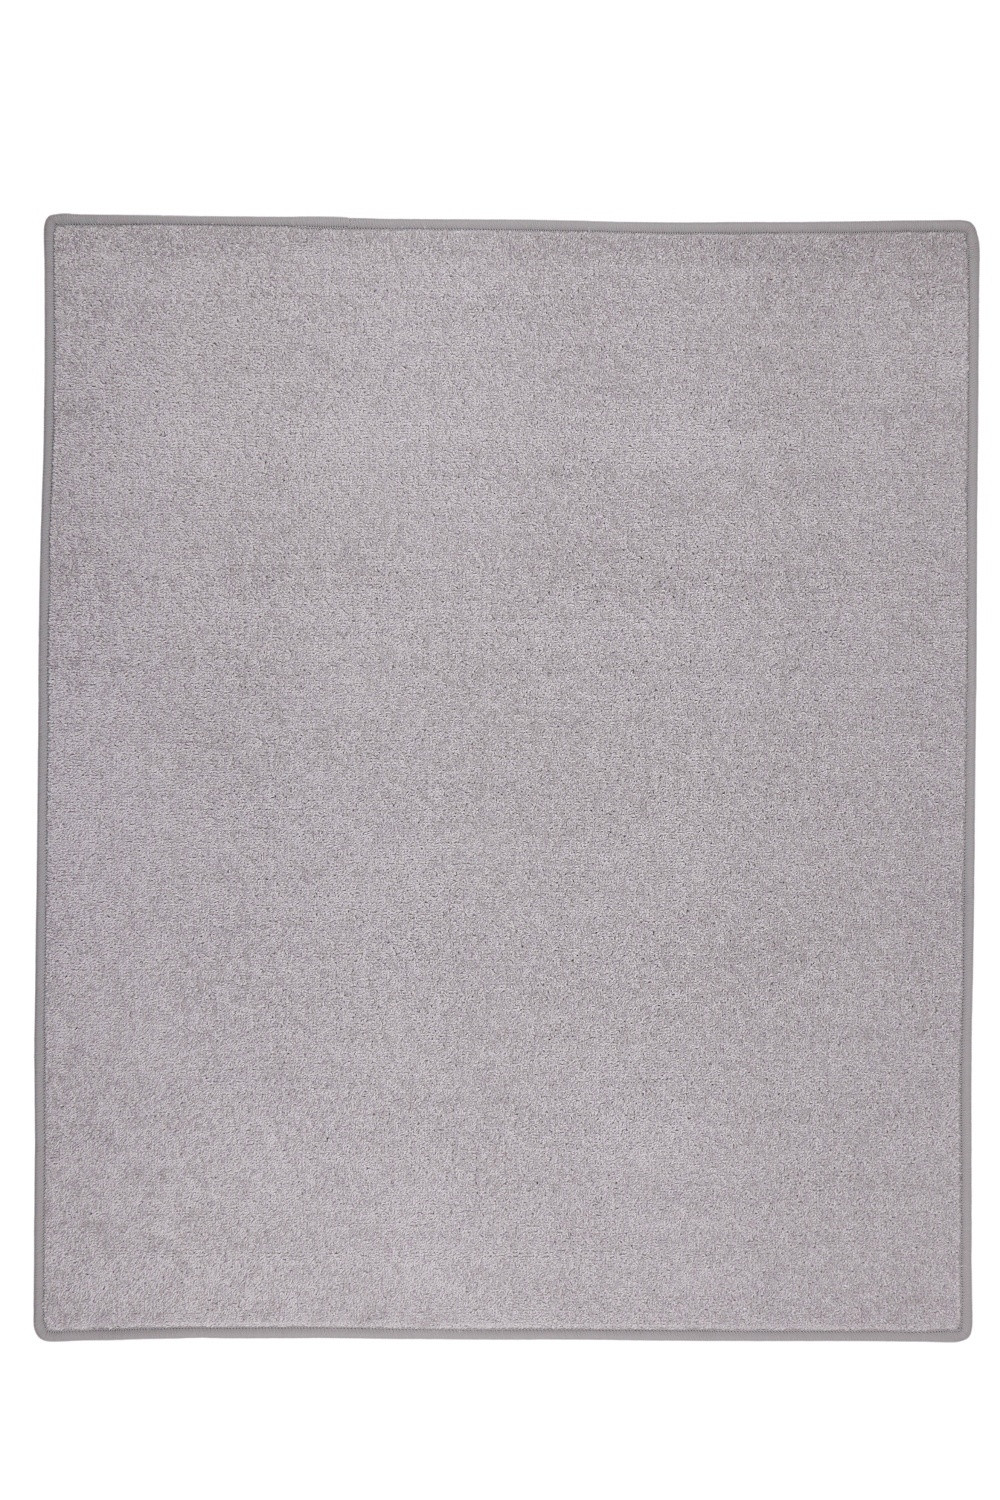 Kusový koberec Eton sivý 73 - 200x300 cm Vopi koberce 